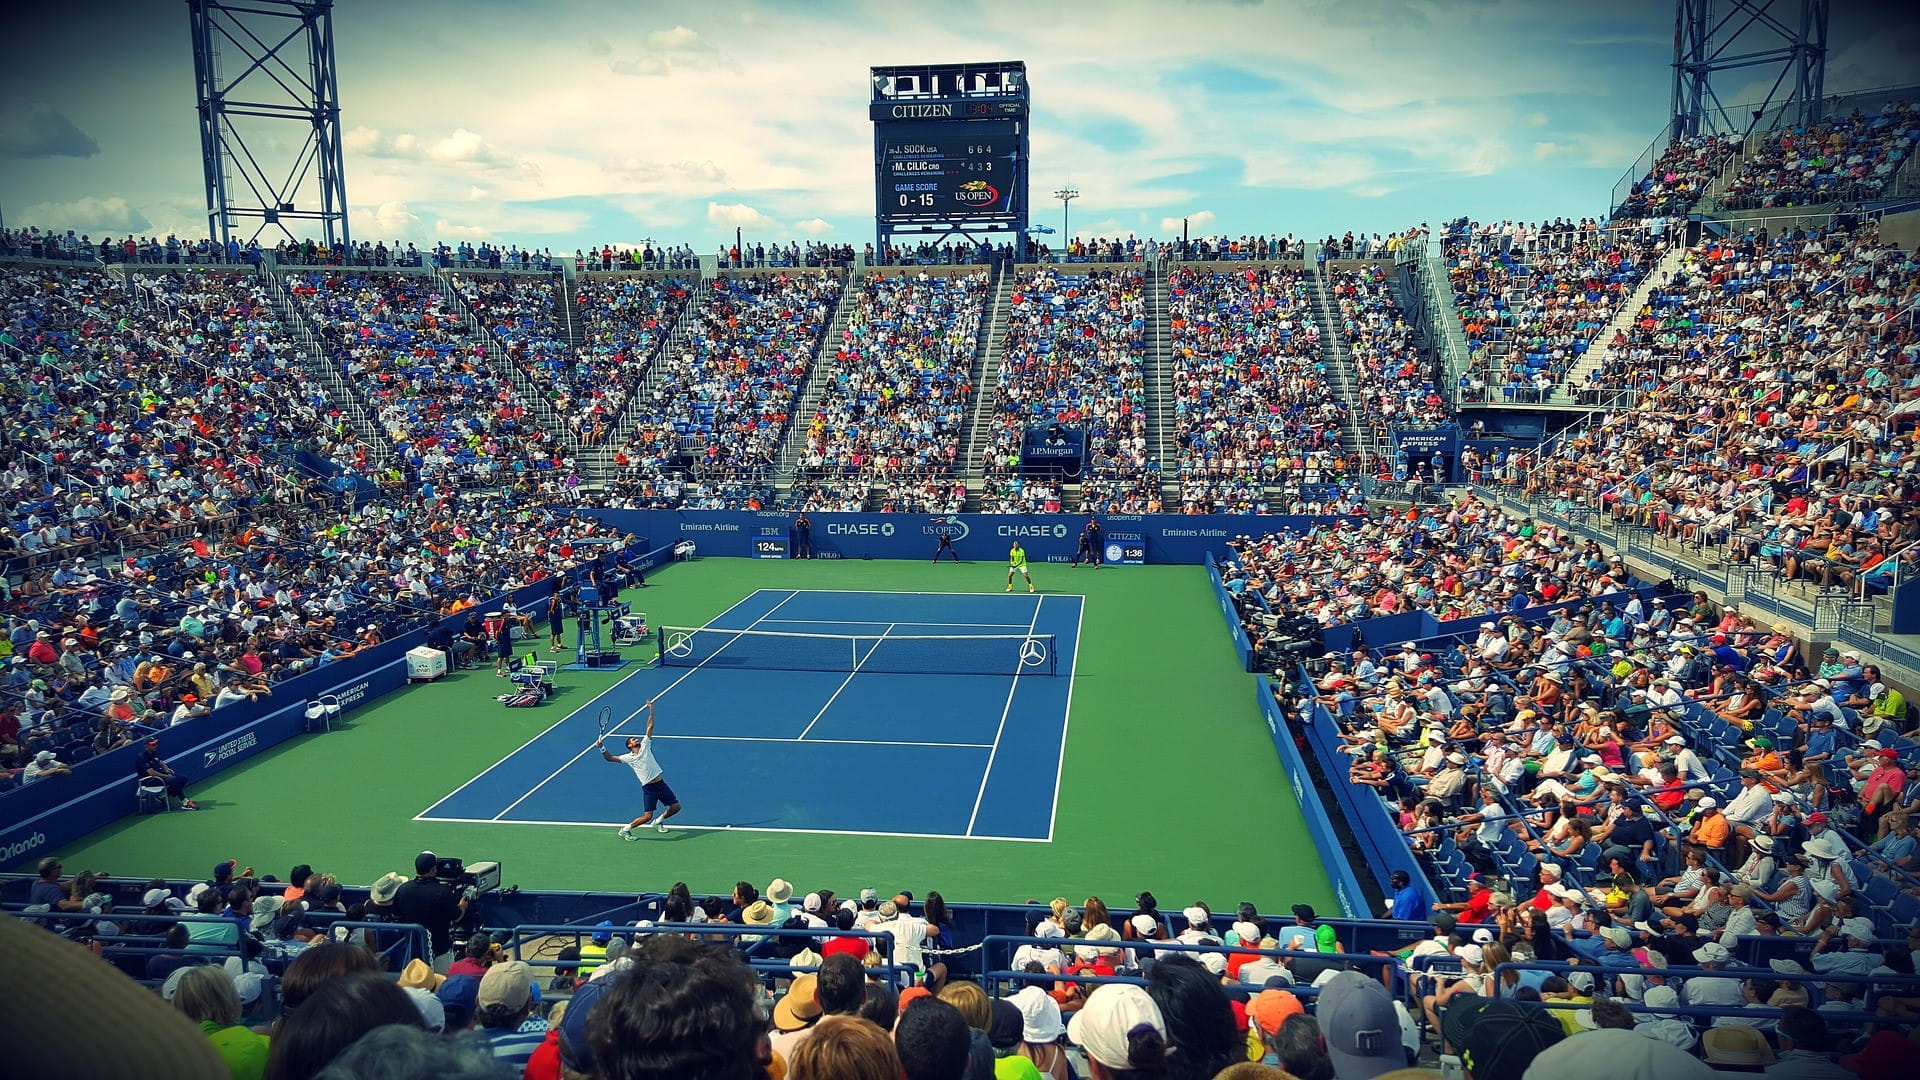 Tennismatch in einem voll besetzten Stadion.